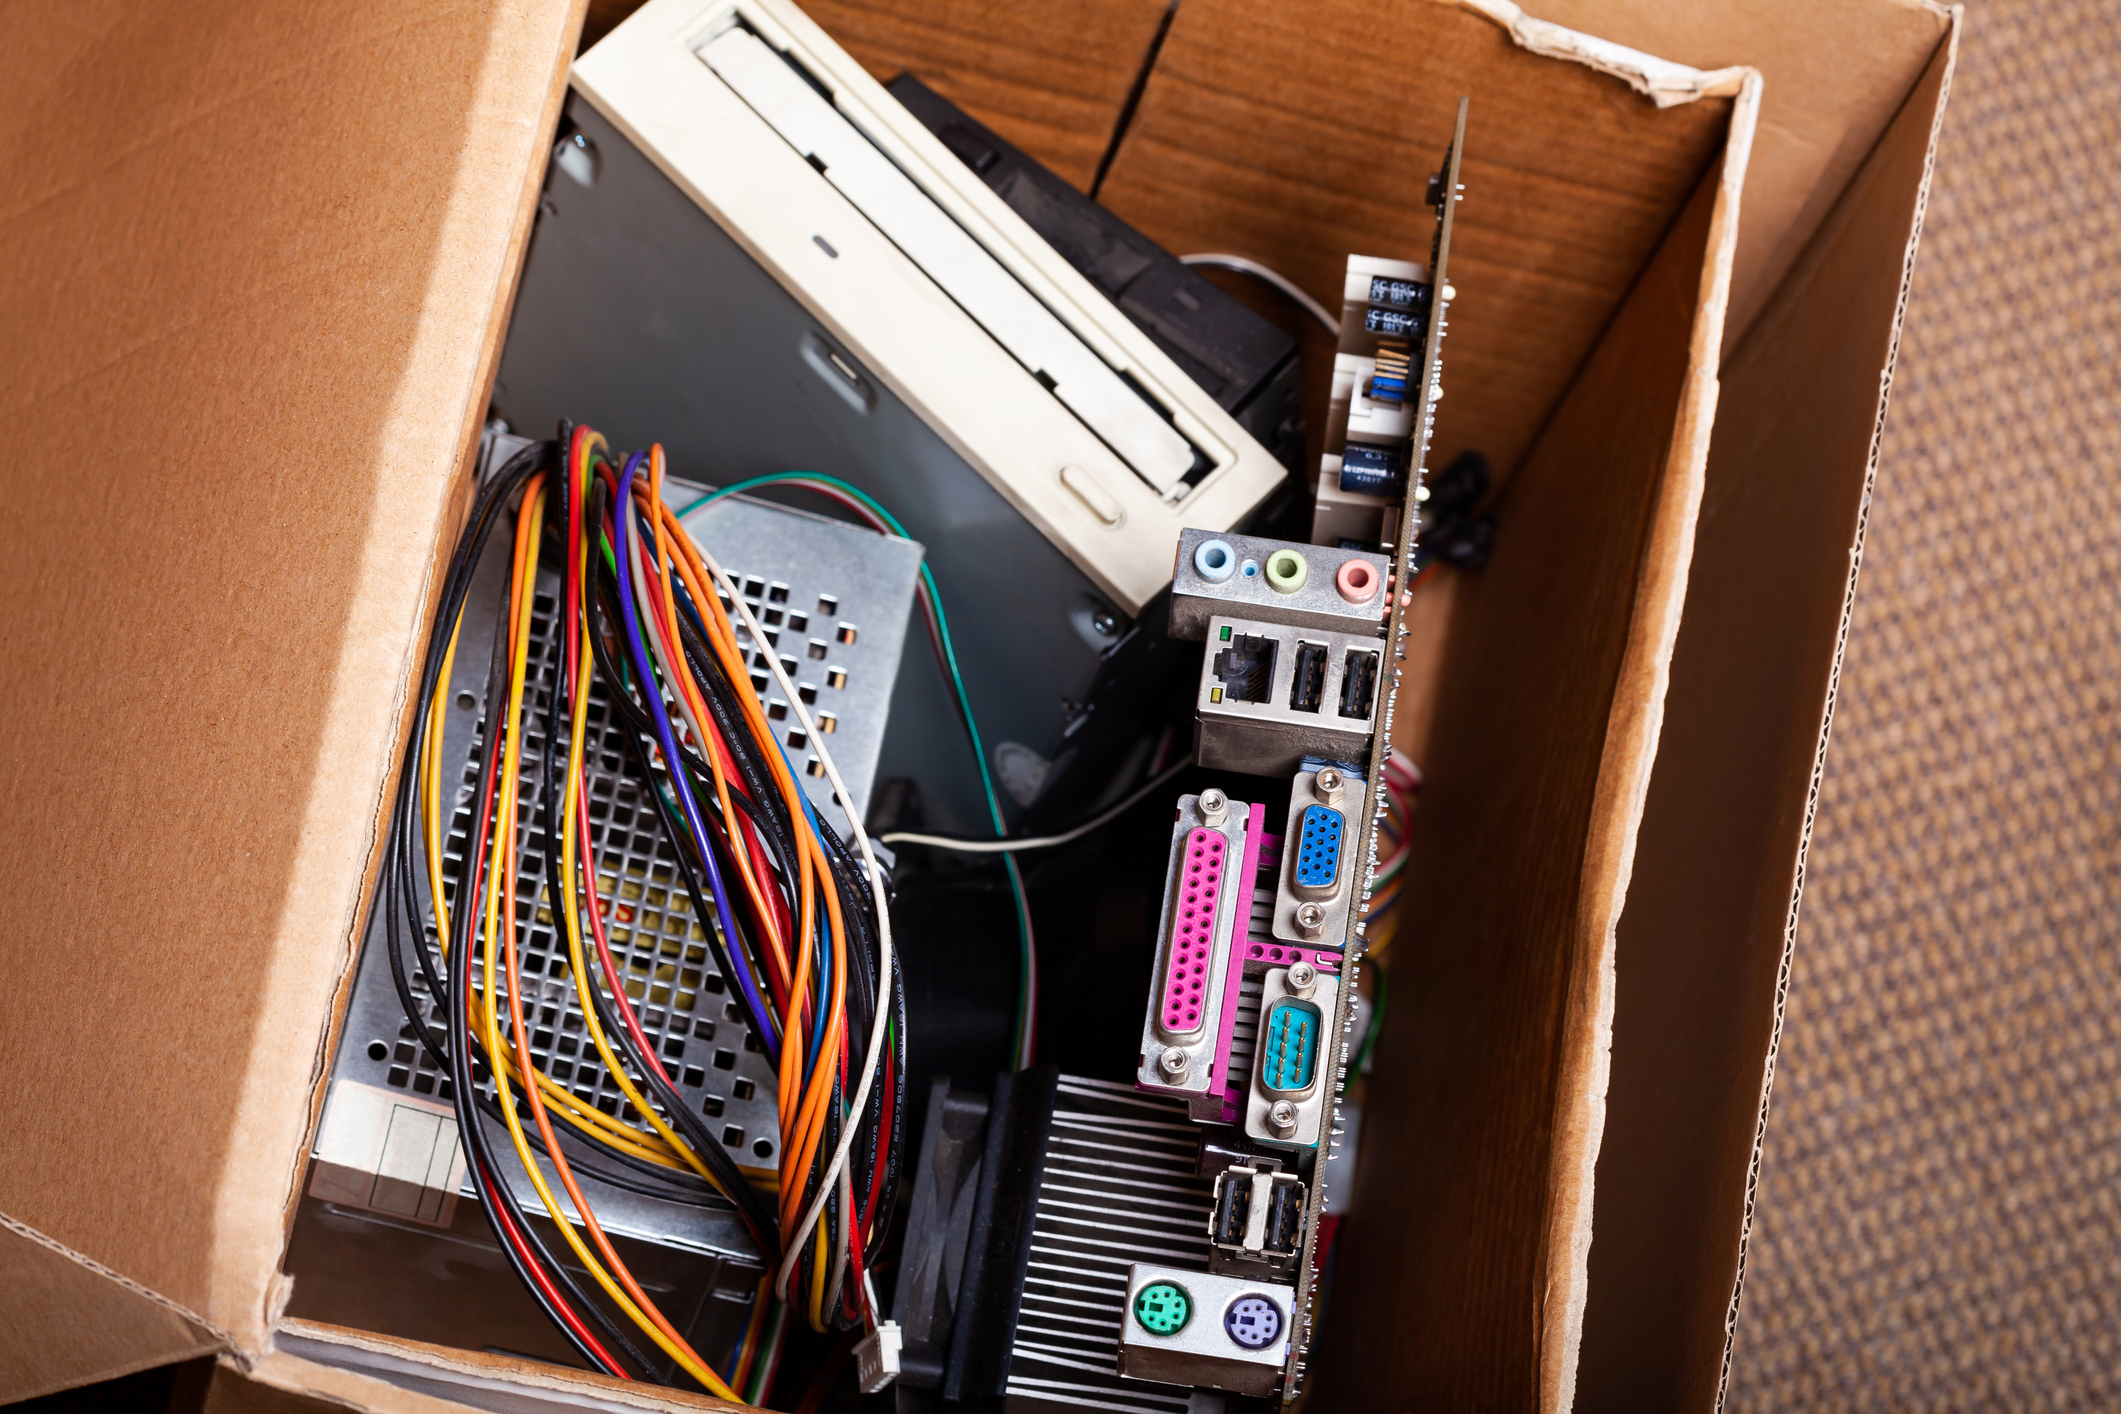 A box of electronics